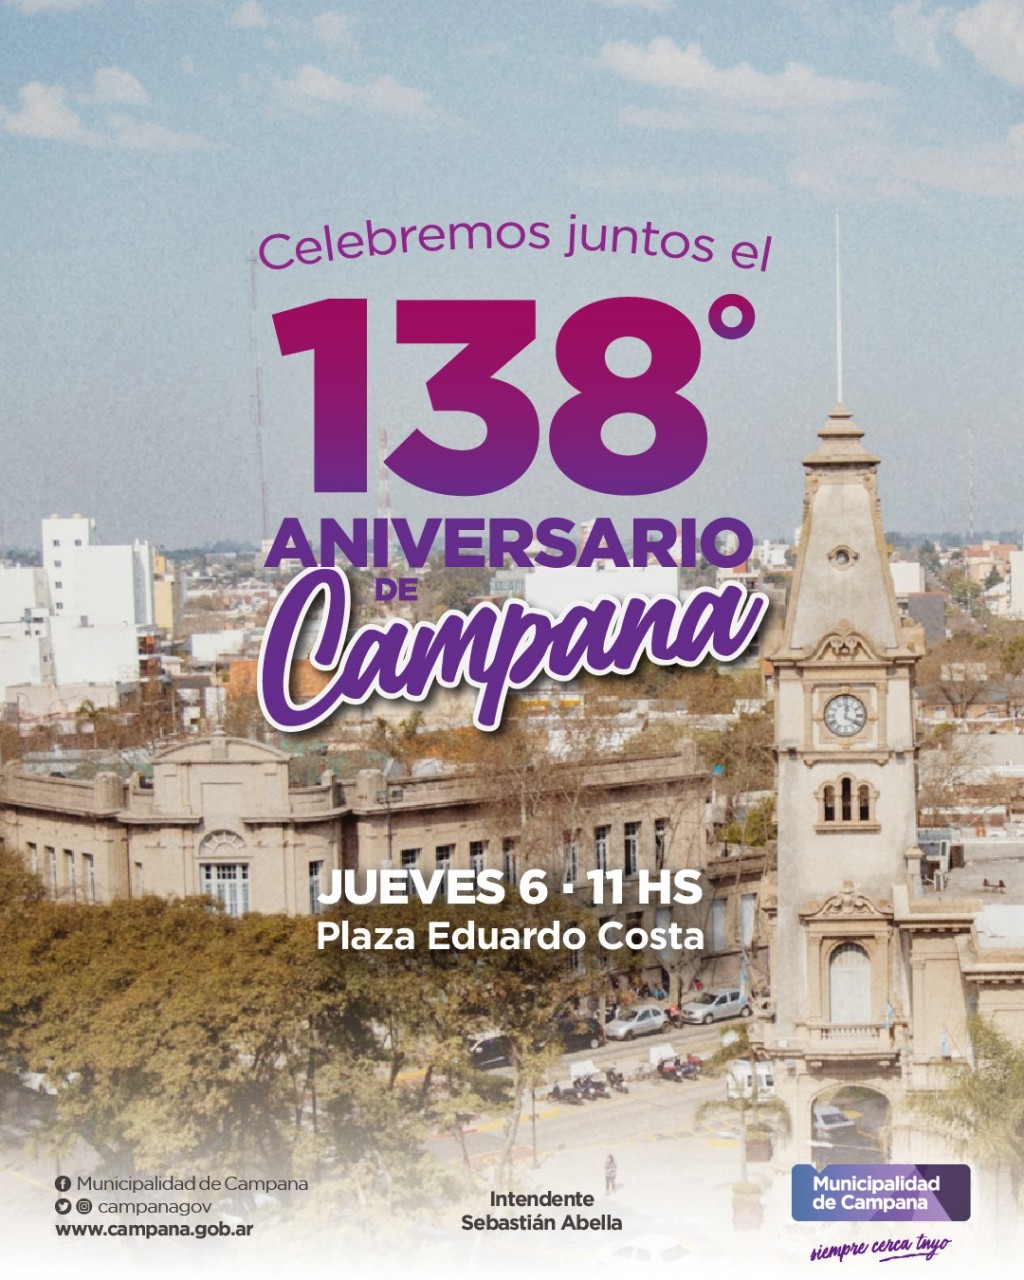 Invitan a los vecinos a celebrar el 138º aniversario de la ciudad